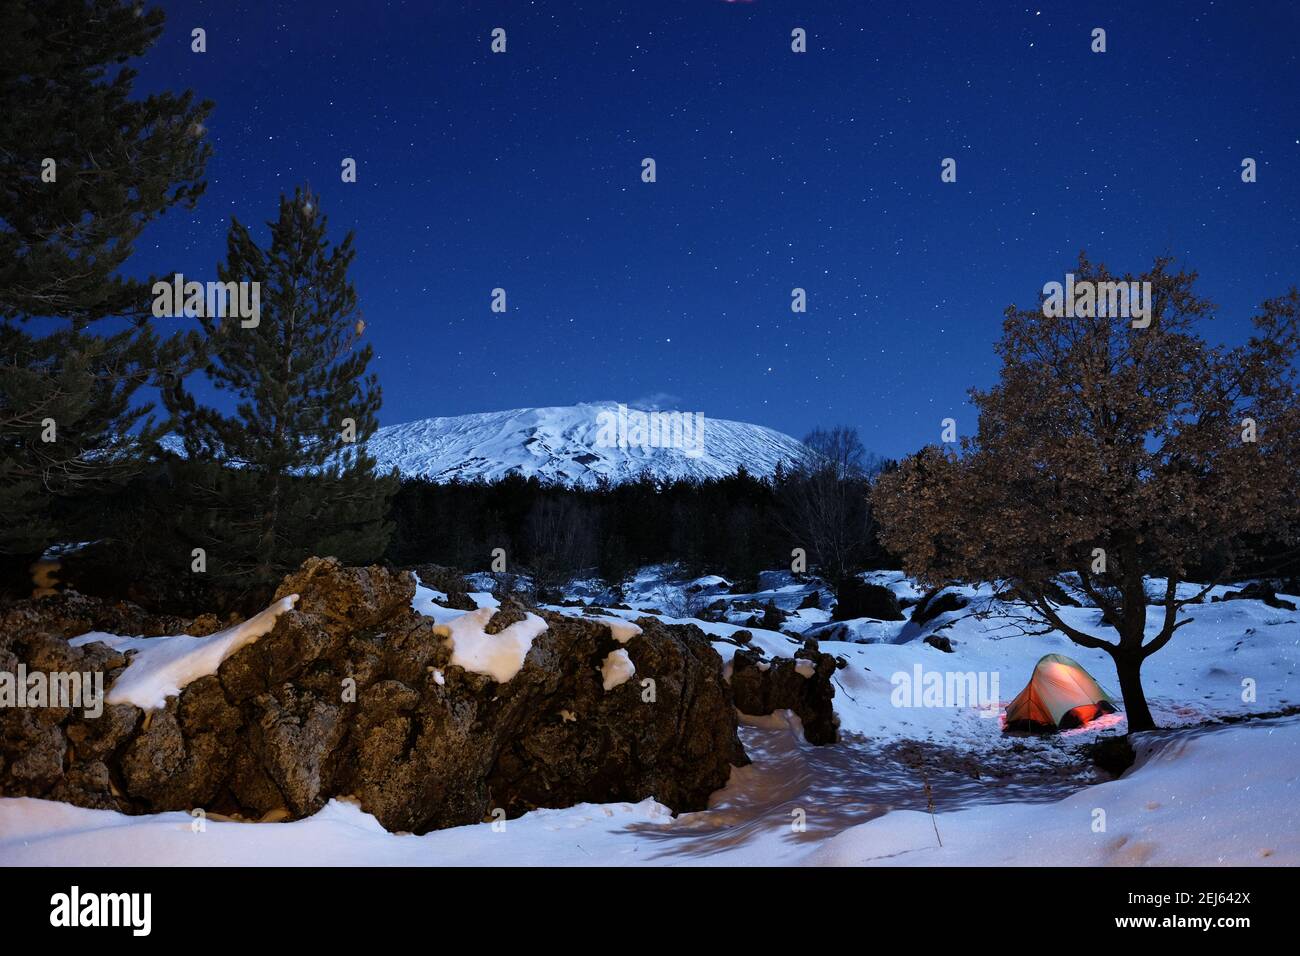 Formazione rocciosa 'ciara' e tenda luminosa nella neve del Parco dell'Etna sotto il cielo stellato, Sicilia Foto Stock